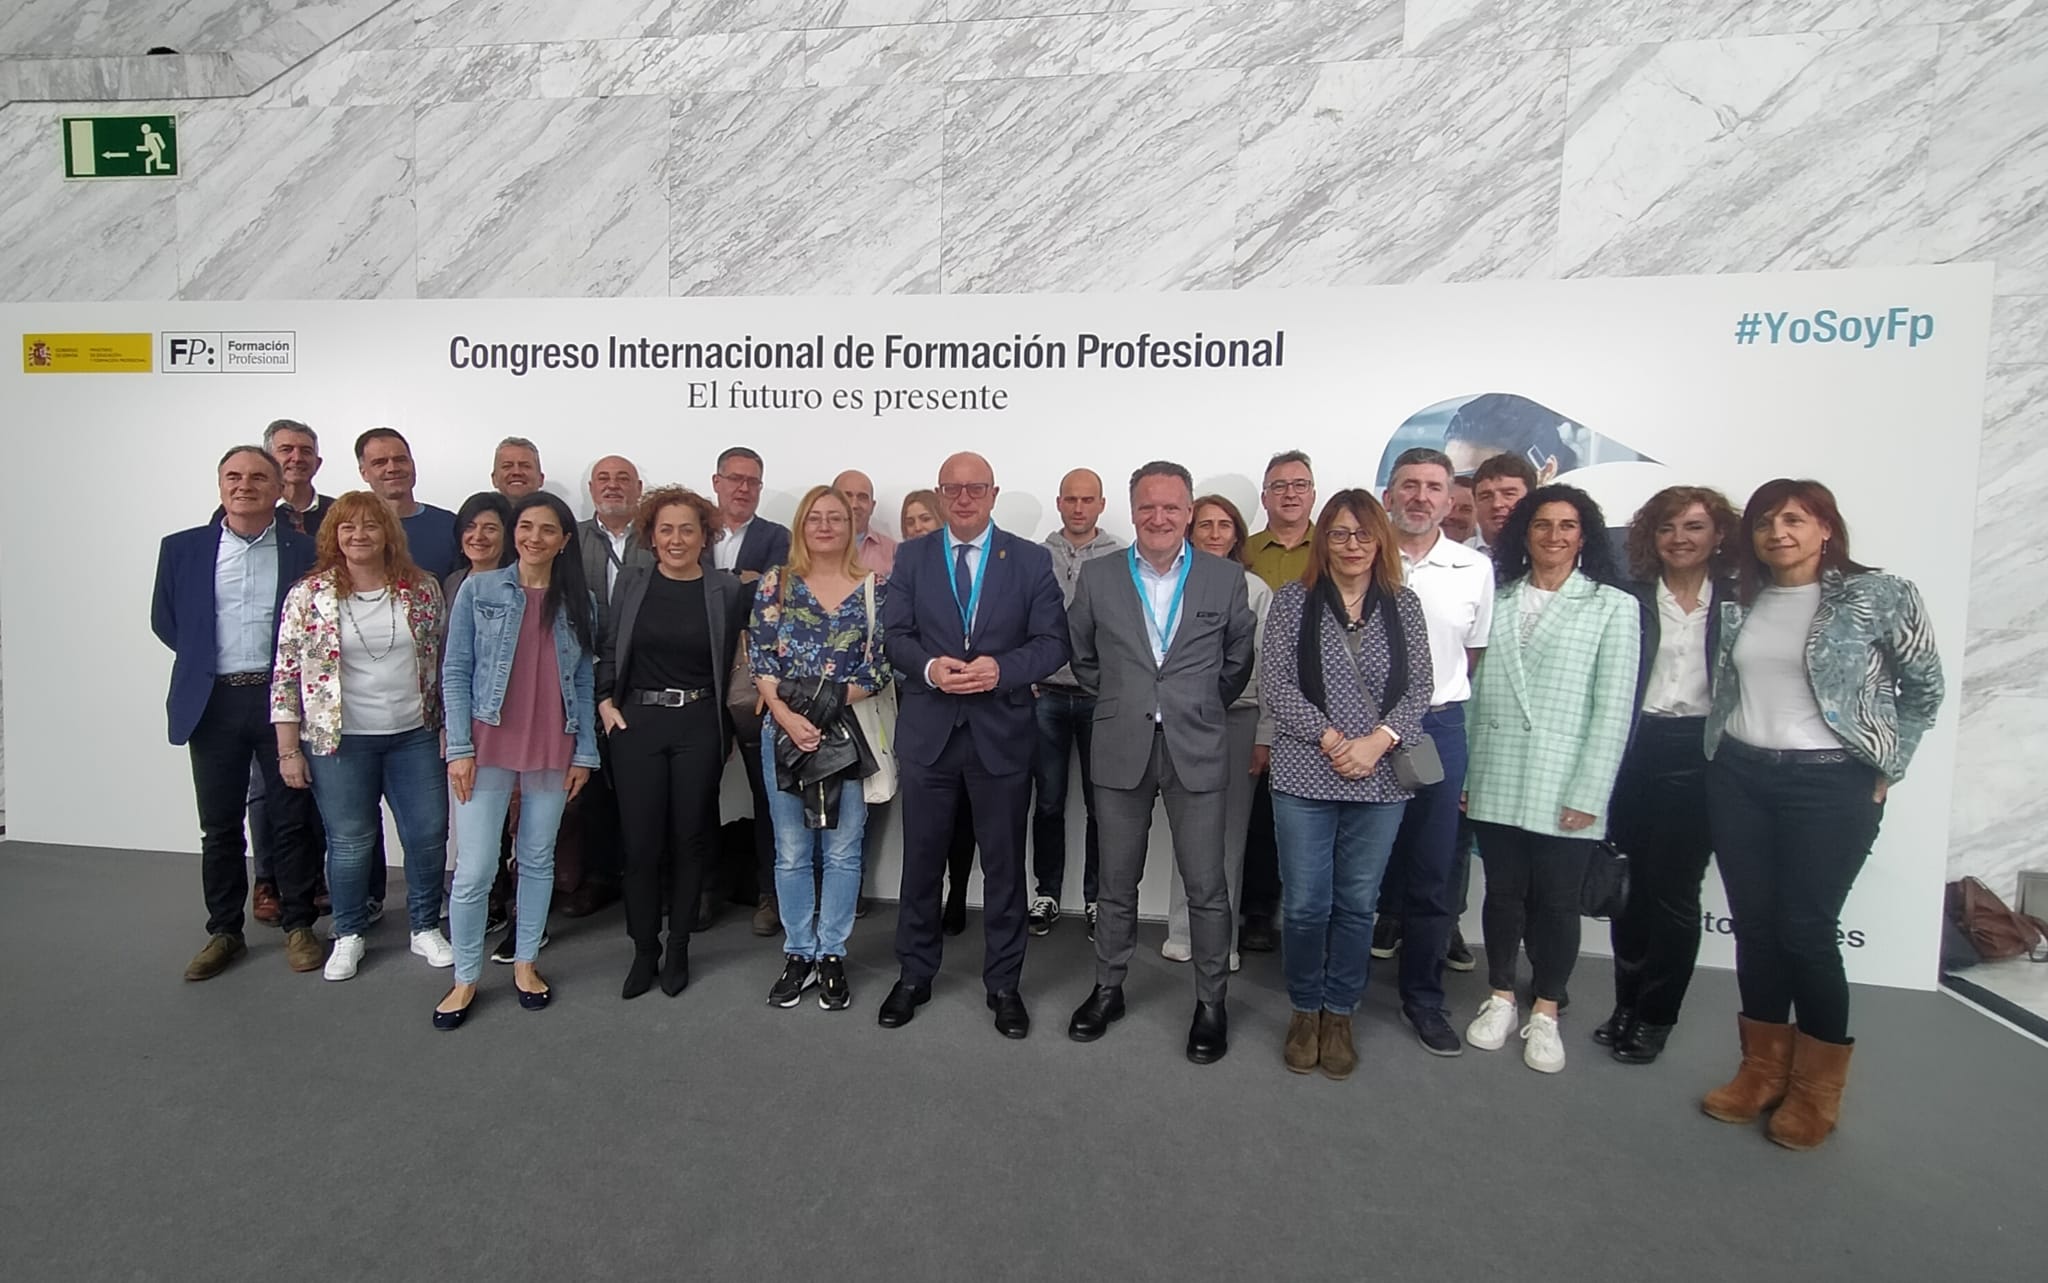 Treinta personas forman la delegación navarra en el Congreso Internacional de FP “El futuro es presente” que se inicia hoy en Madrid